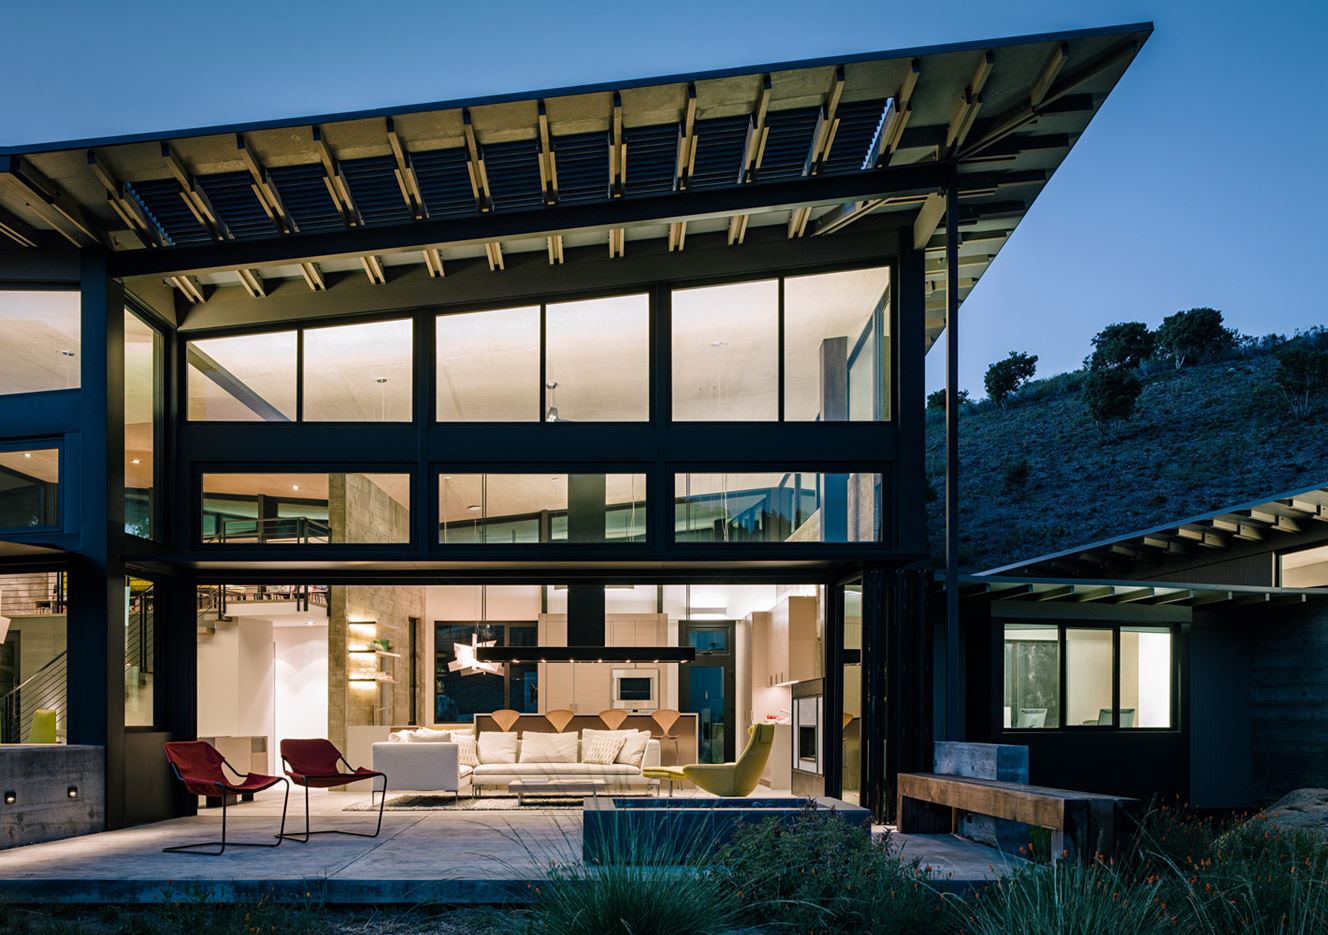 Butterfly House in Carmel, CA by Feldman Architecture